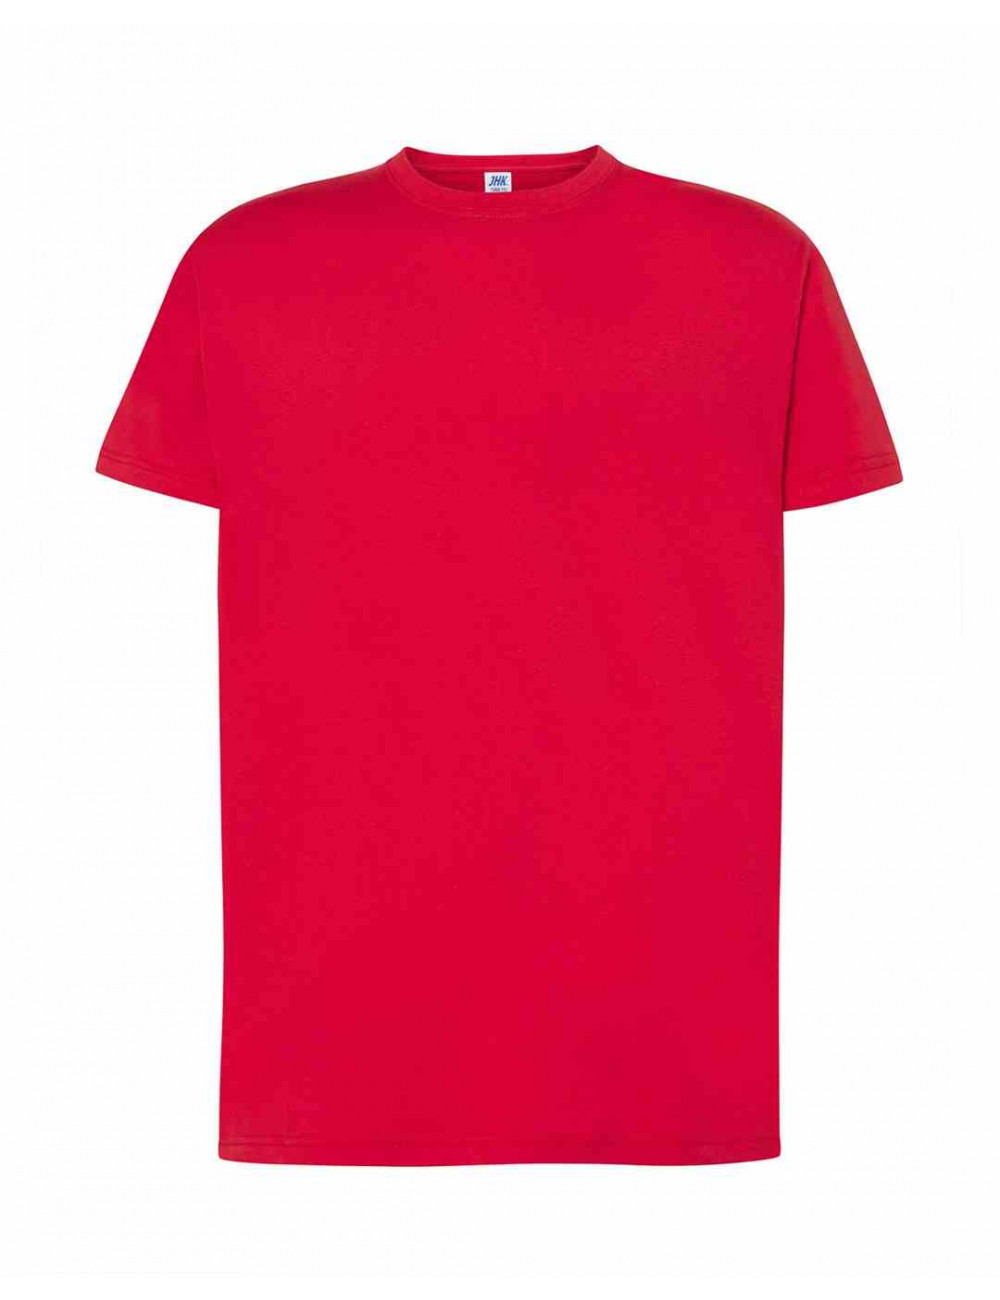 Men's T-shirt tsra 150 regular t-shirt cr - canary red Jhk